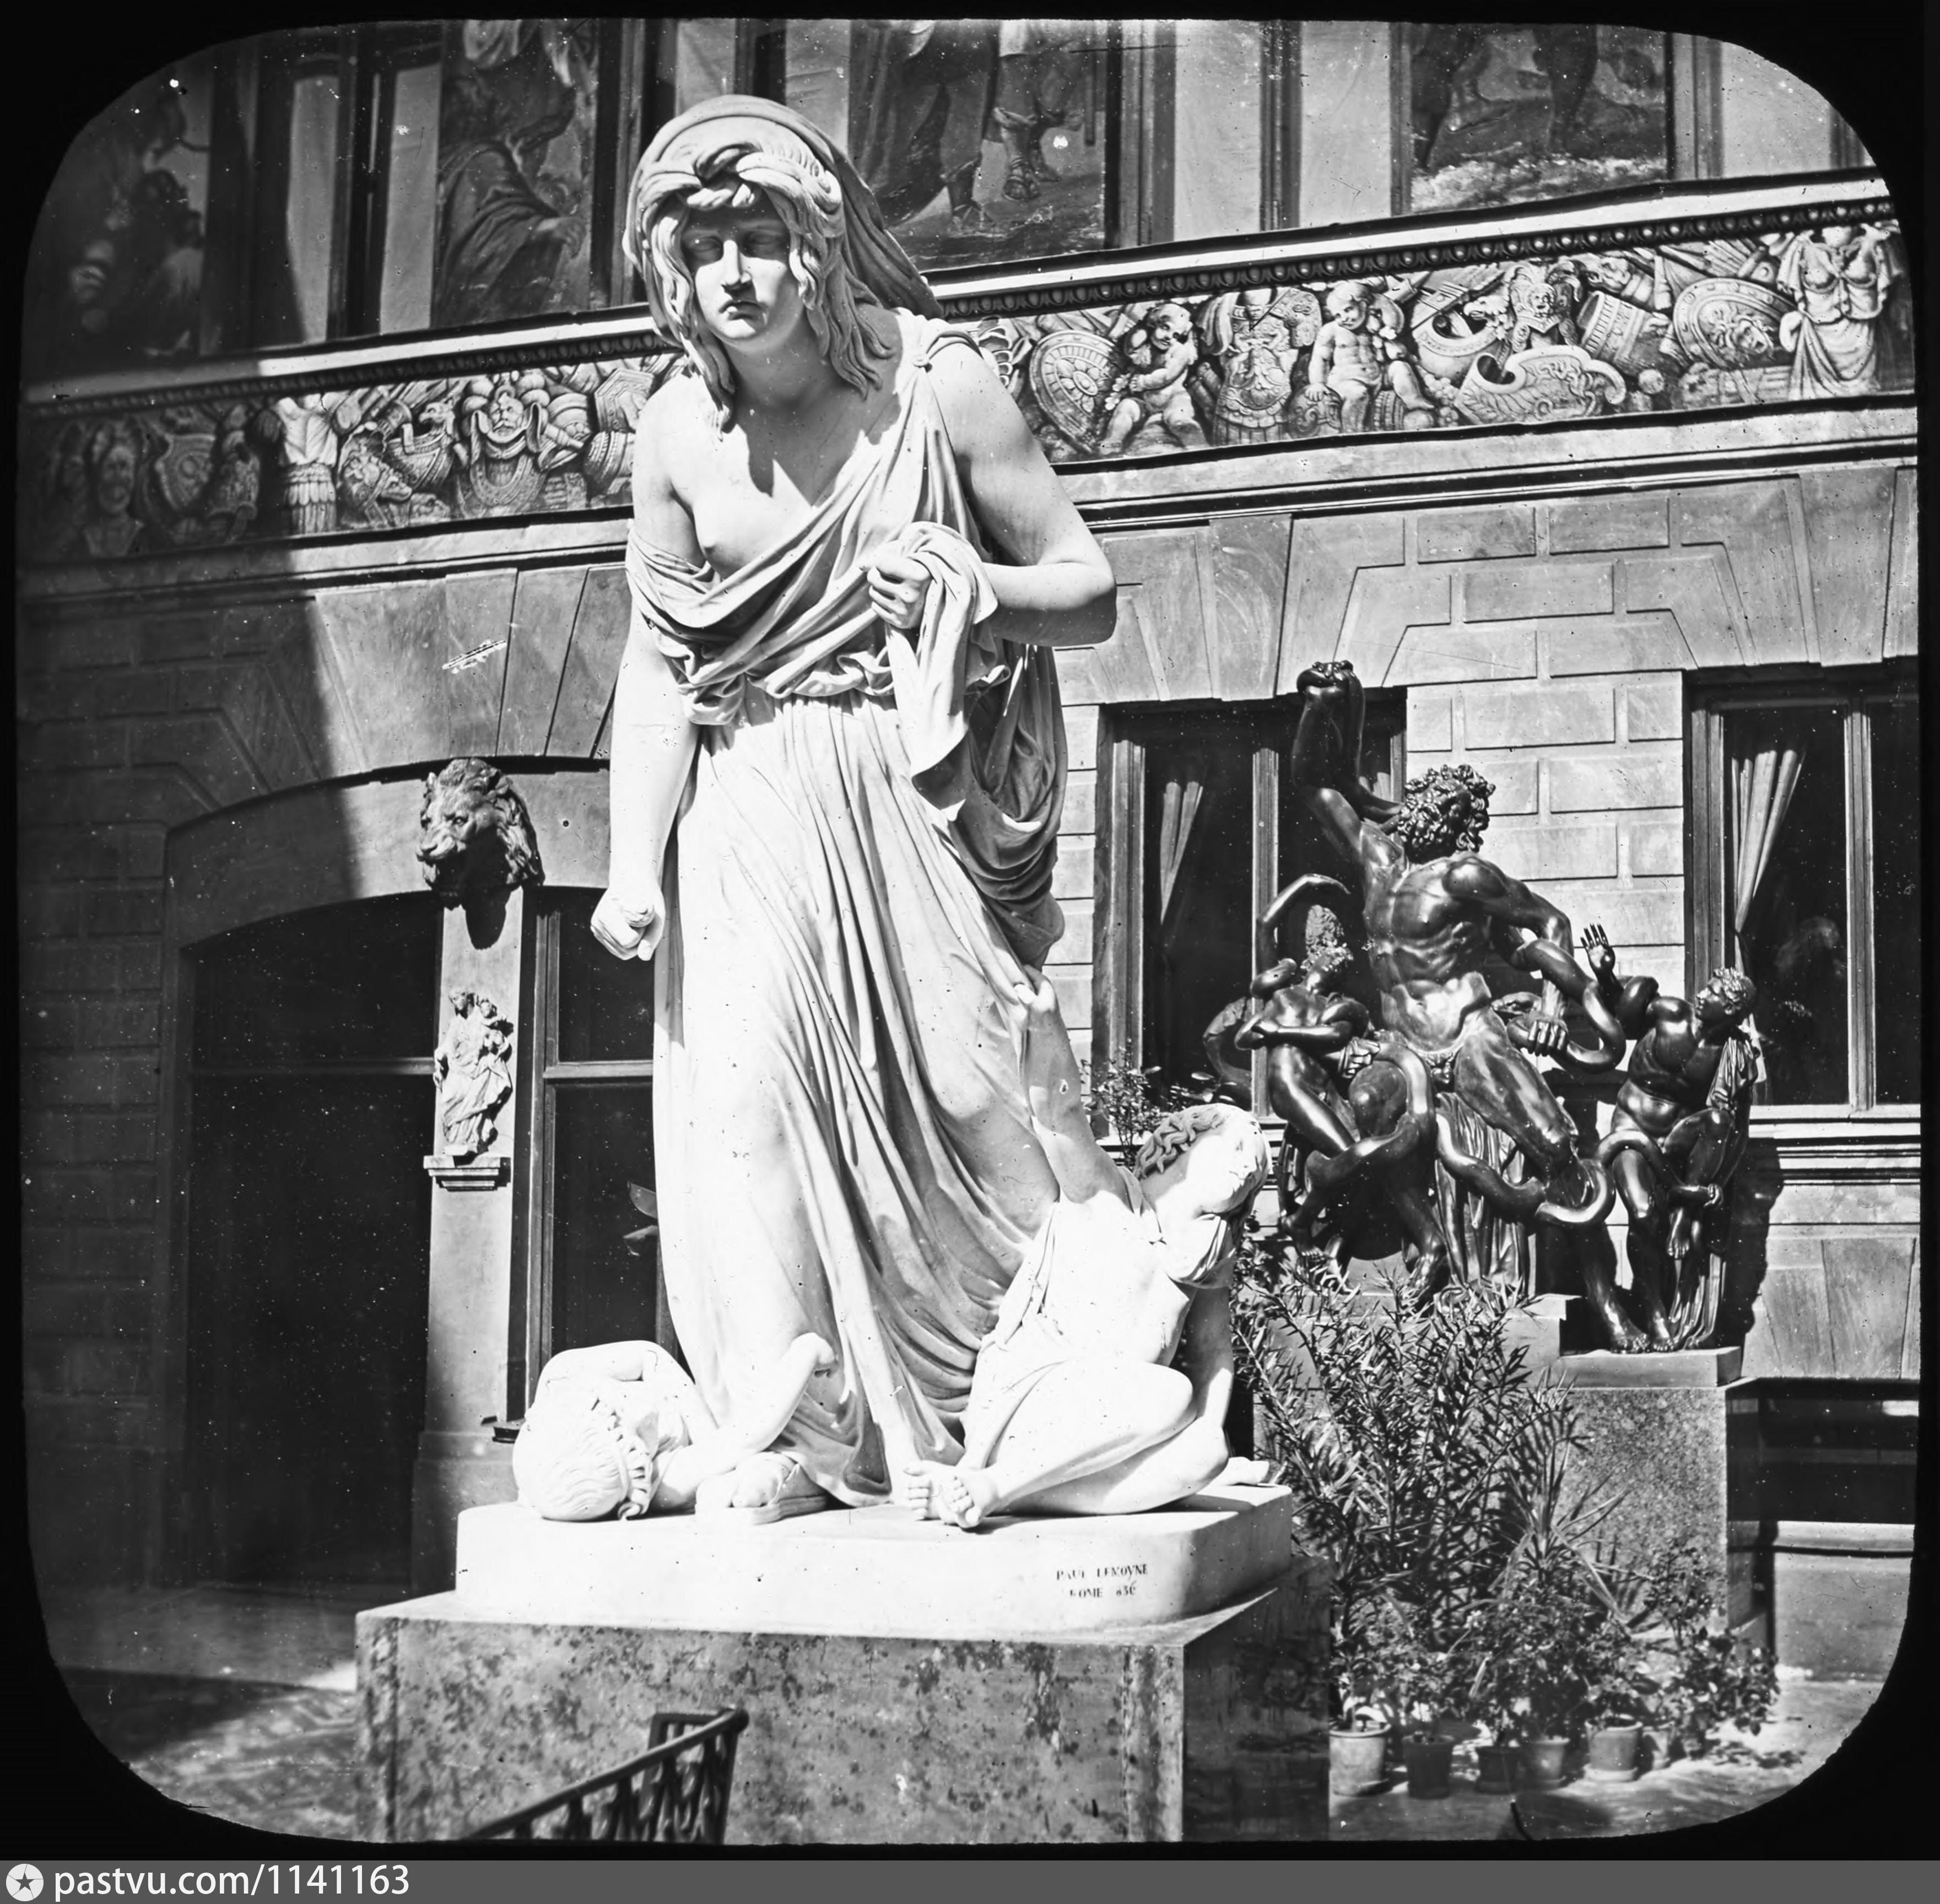 Автор медеи 7. Медея статуя. Жены Огюста де Монферрана.